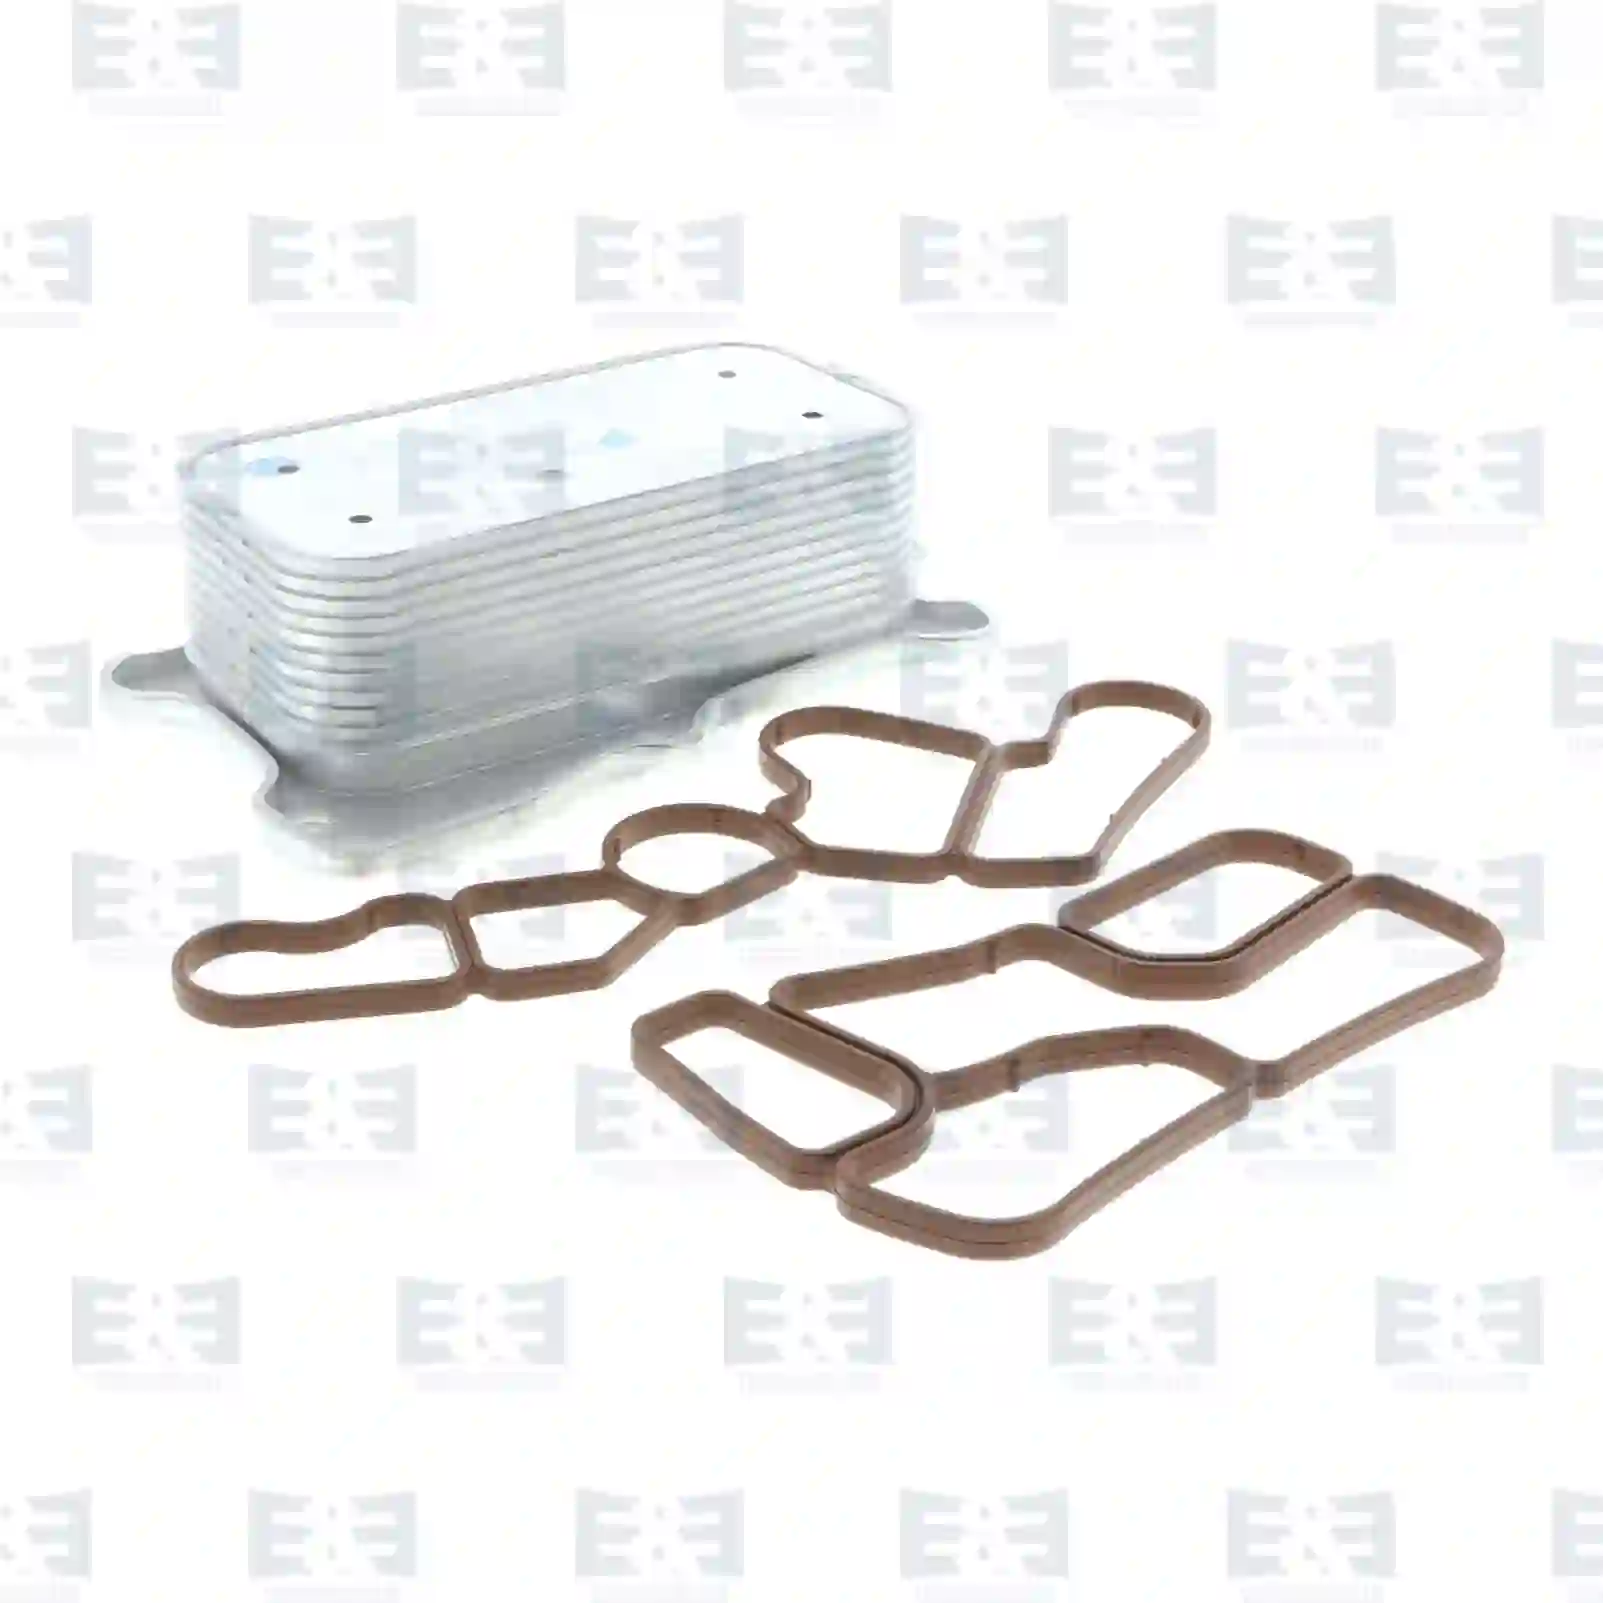  Oil cooler || E&E Truck Spare Parts | Truck Spare Parts, Auotomotive Spare Parts